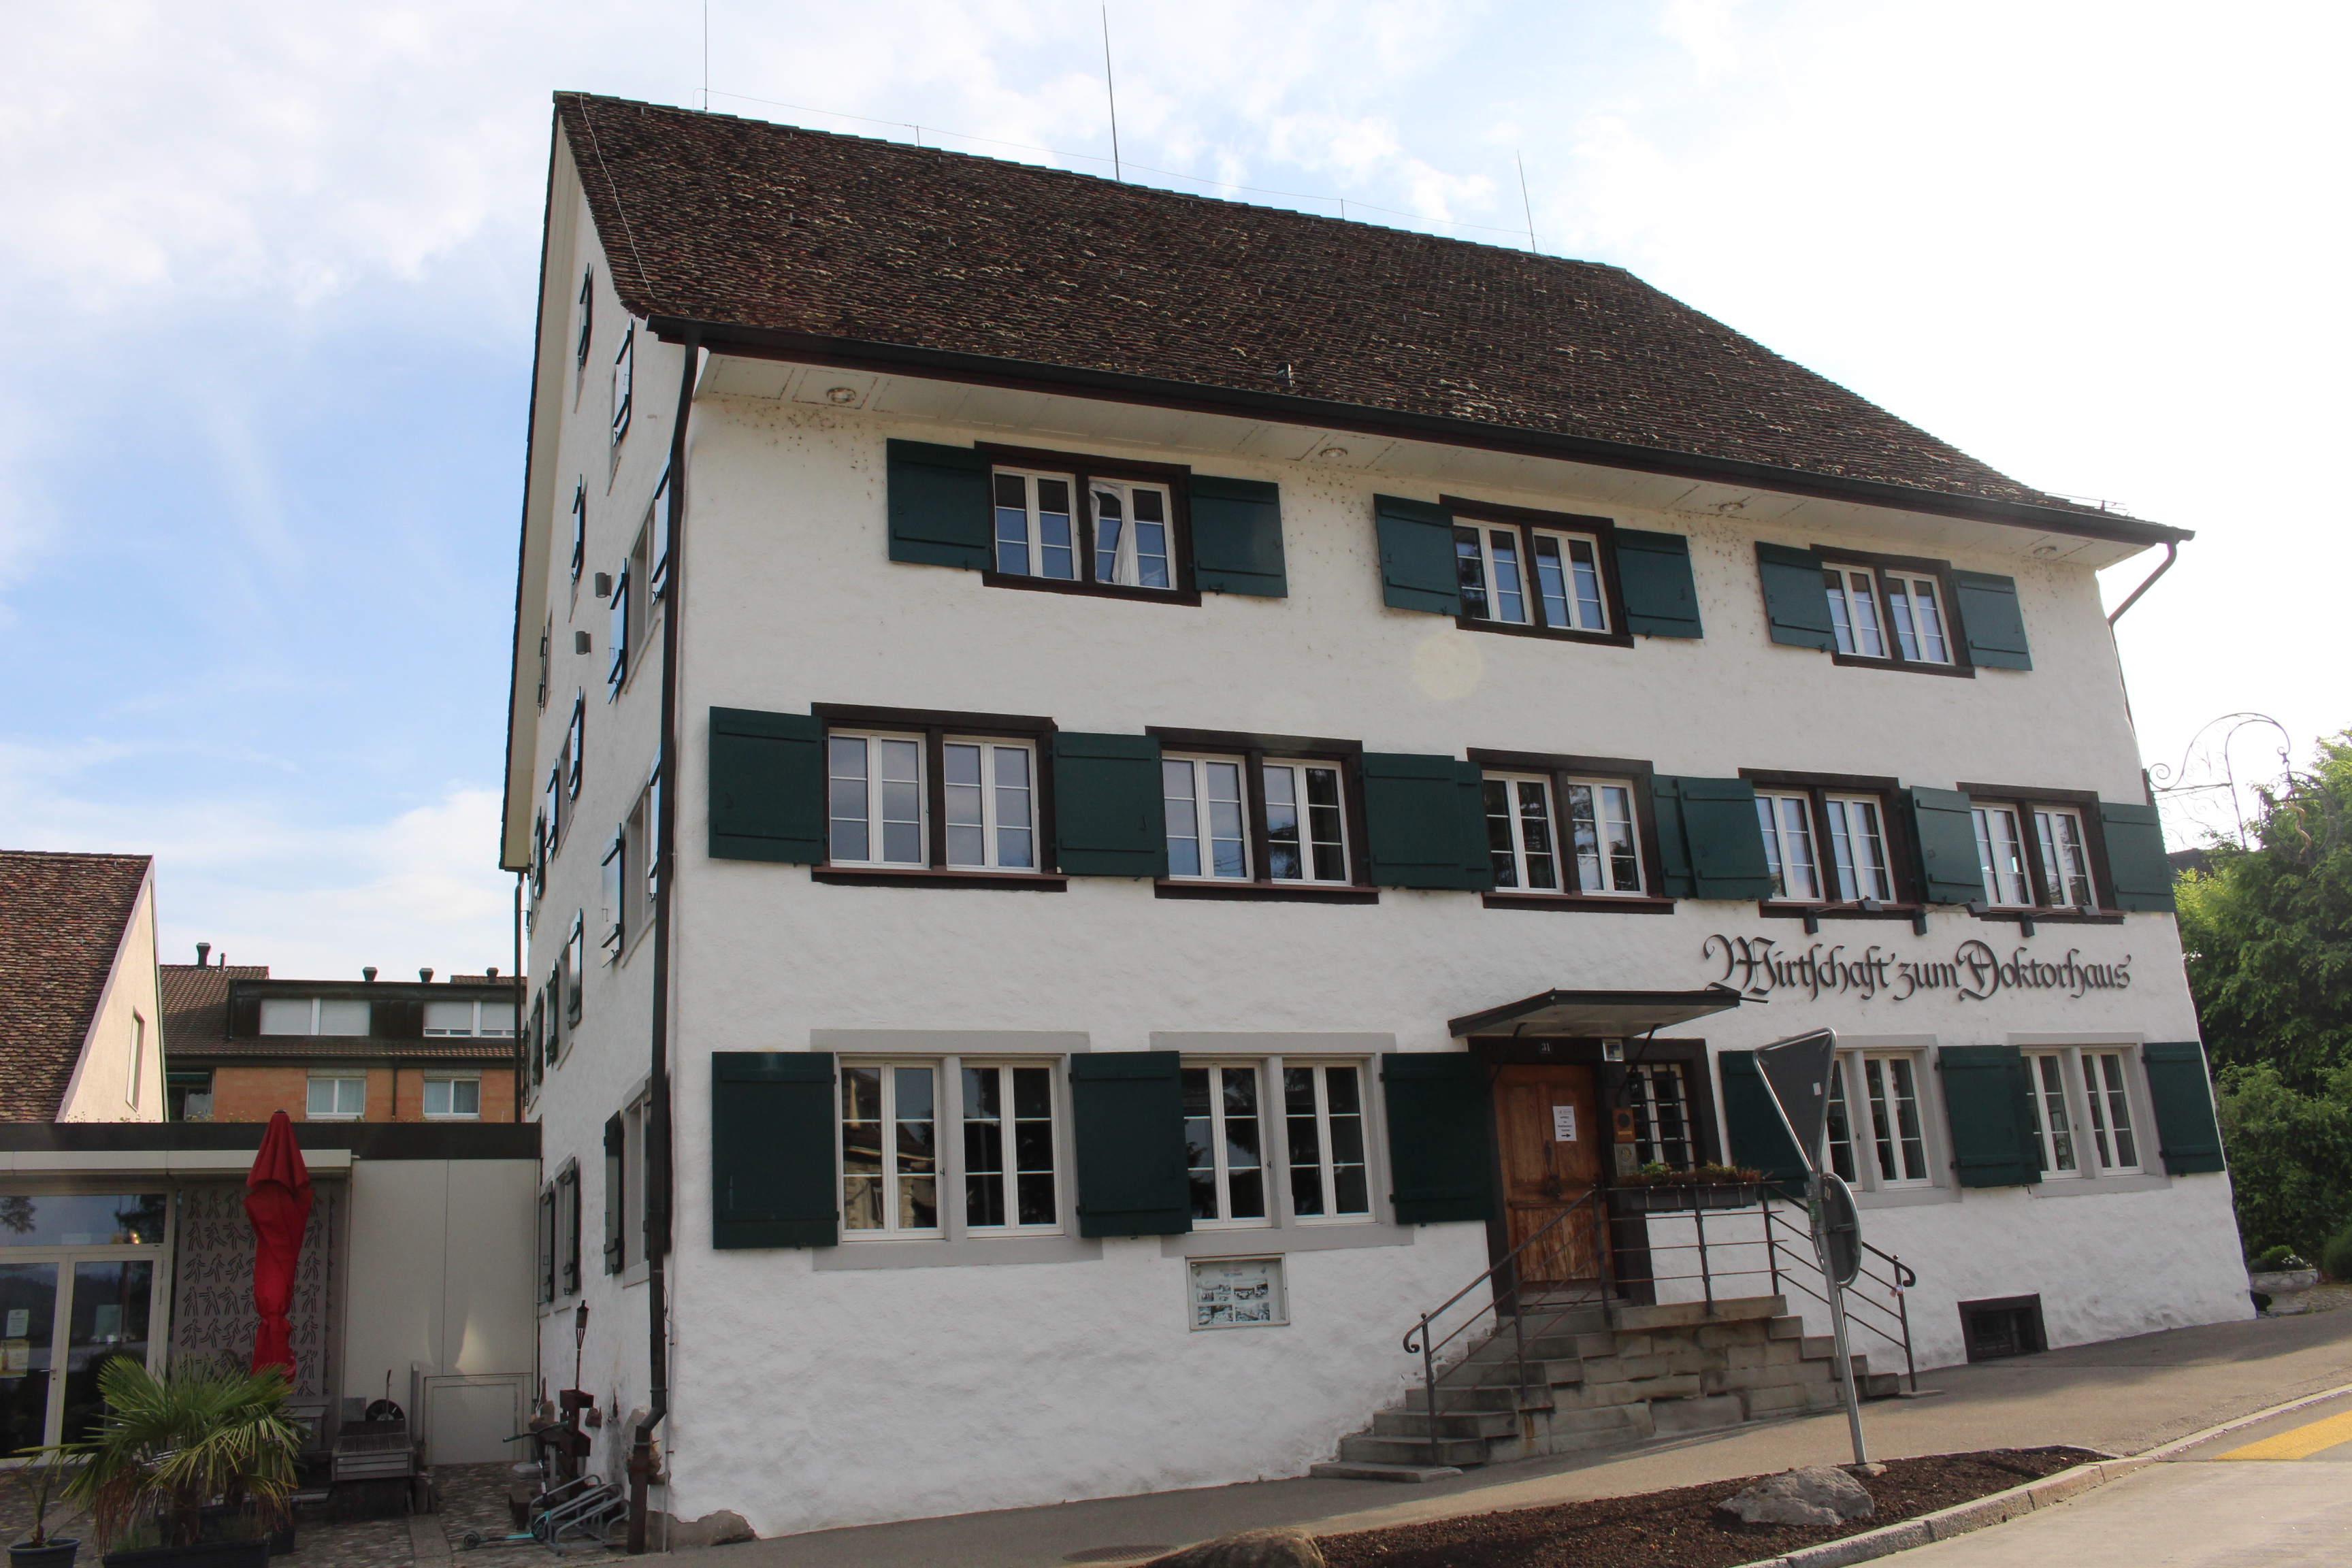 Doktorhaus in Wallisellen